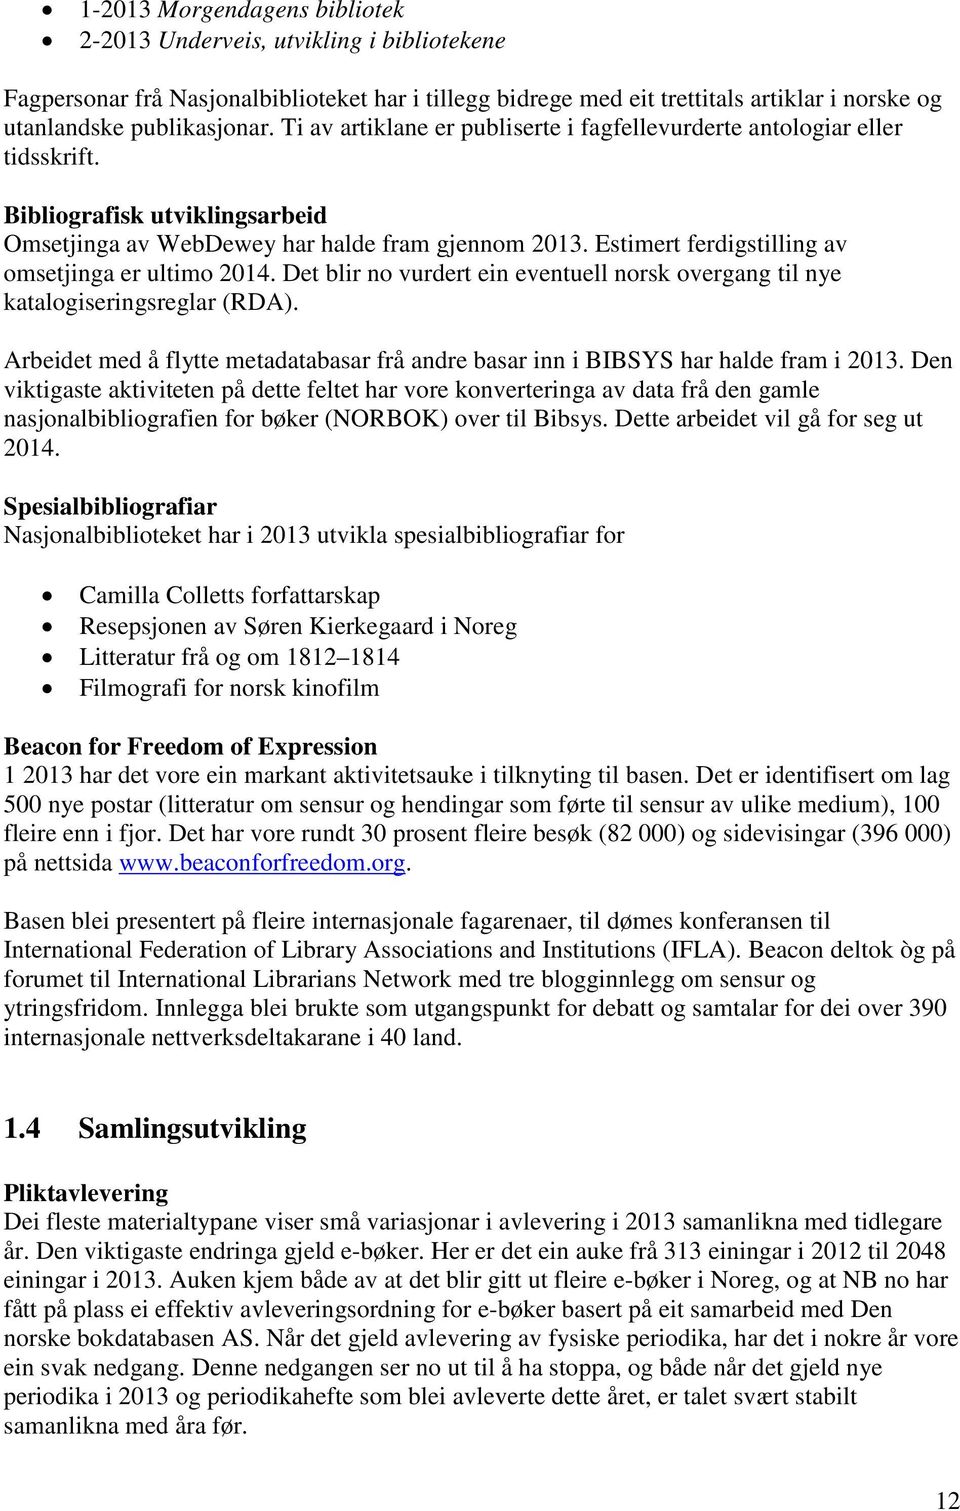 Estimert ferdigstilling av omsetjinga er ultimo 2014. Det blir no vurdert ein eventuell norsk overgang til nye katalogiseringsreglar (RDA).